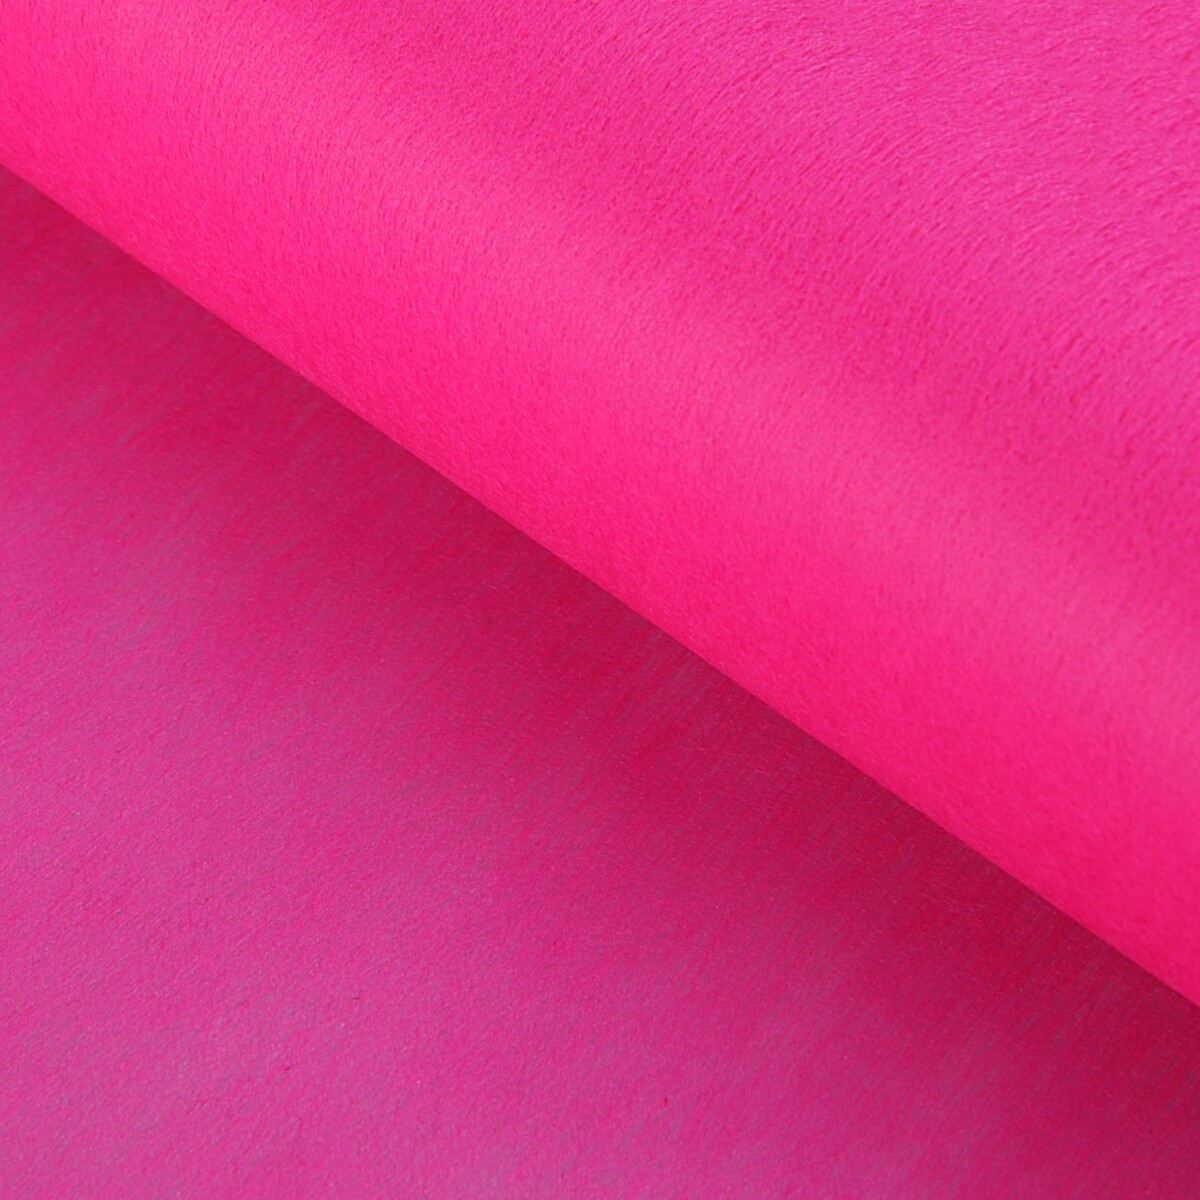 Фетр для упаковок и поделок, однотонный, ярко-розовый, однотонный, двусторонний, рулон 1шт., 50 см x 15 м фетр для декора и флористики однотонный белый двусторонний рулон 1шт 50 см x 15 м